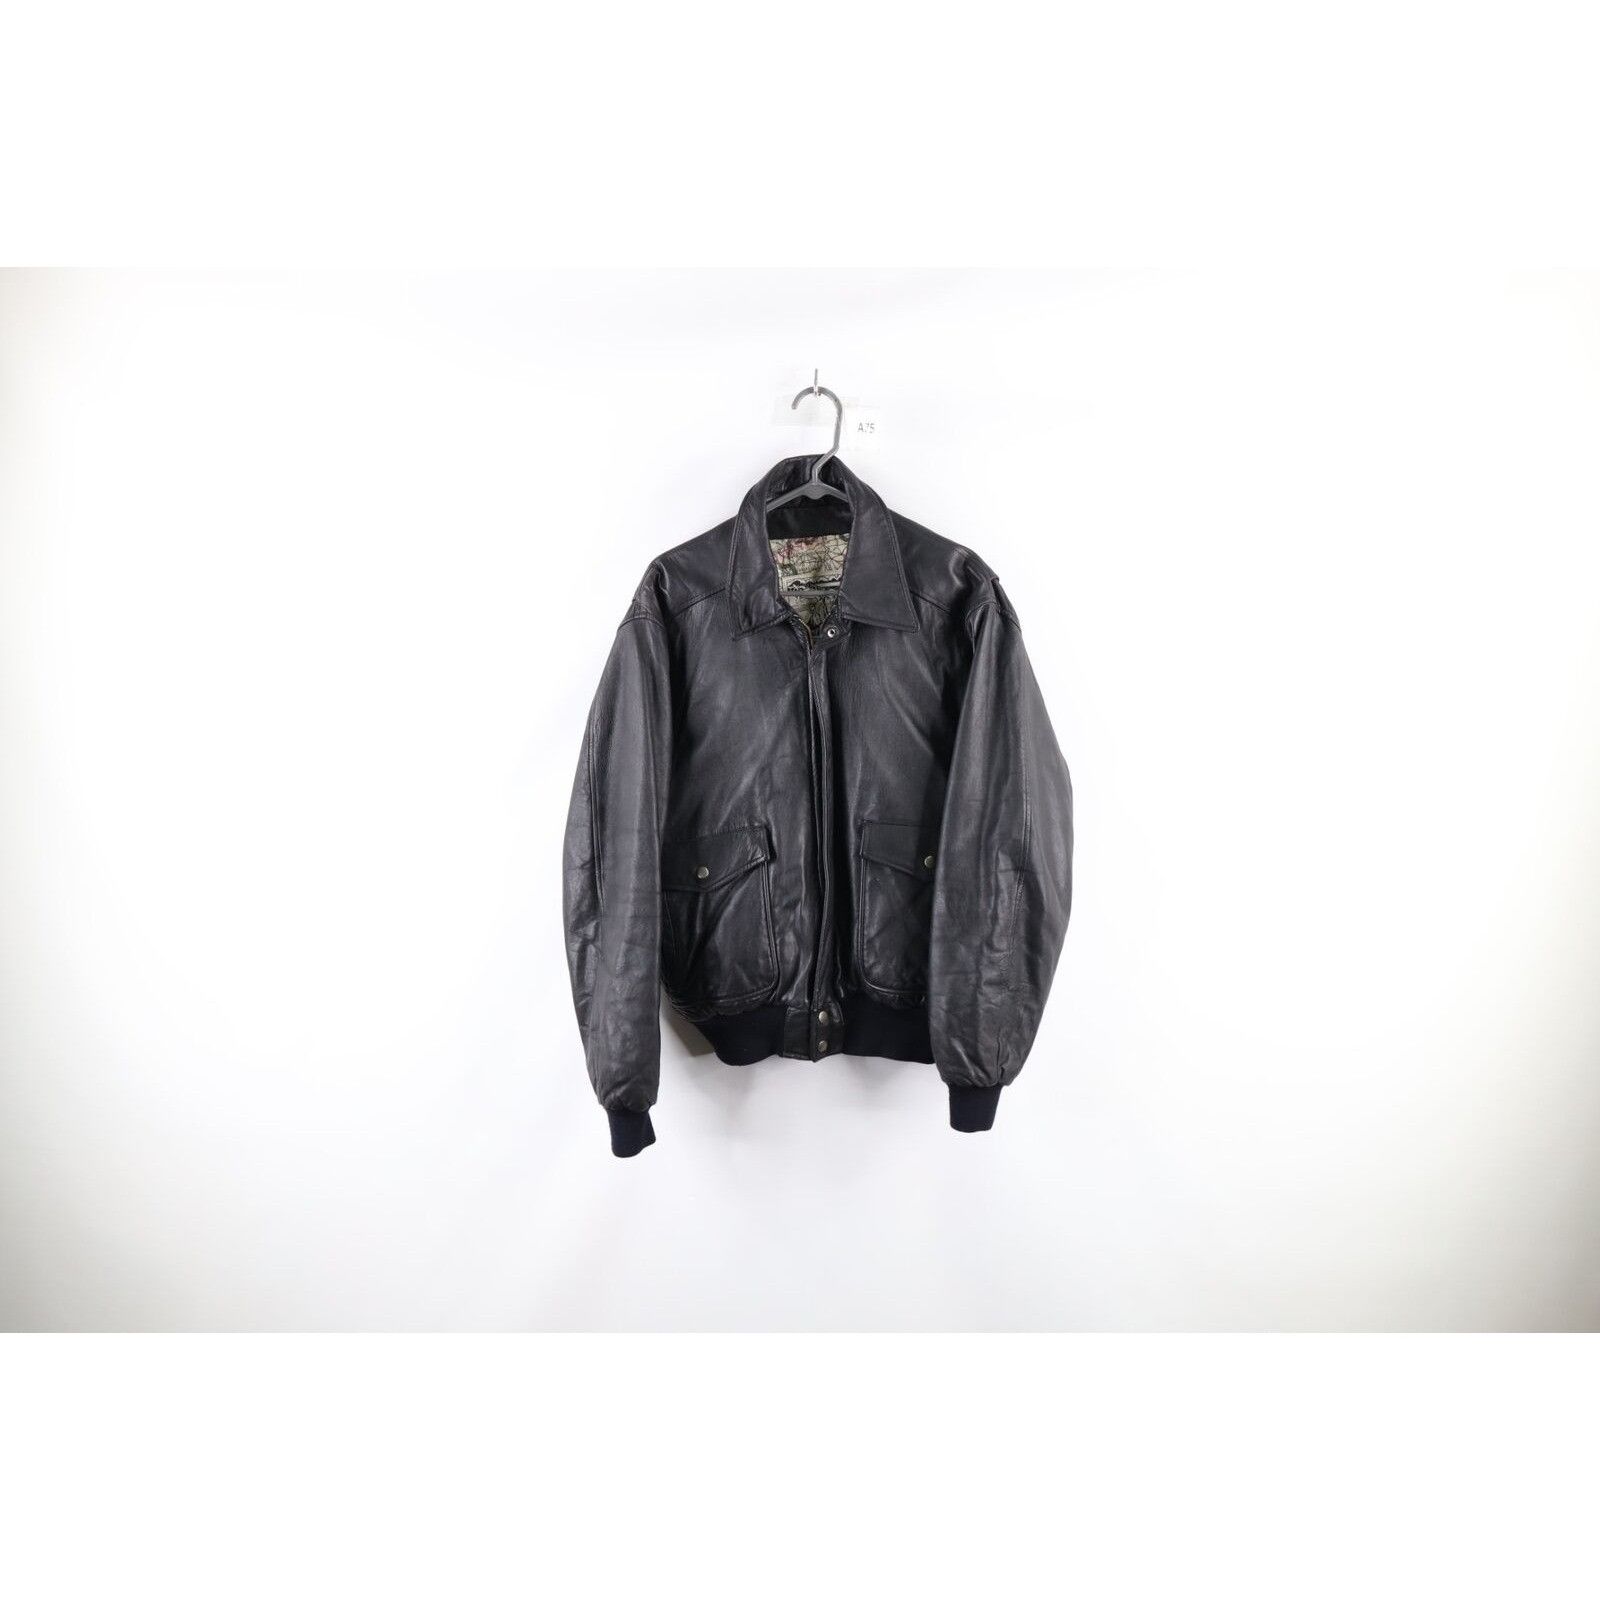 Vintage Vintage Surprise Attack Nuke Japan Souvenir Leather Jacket Size US M / EU 48-50 / 2 - 2 Preview